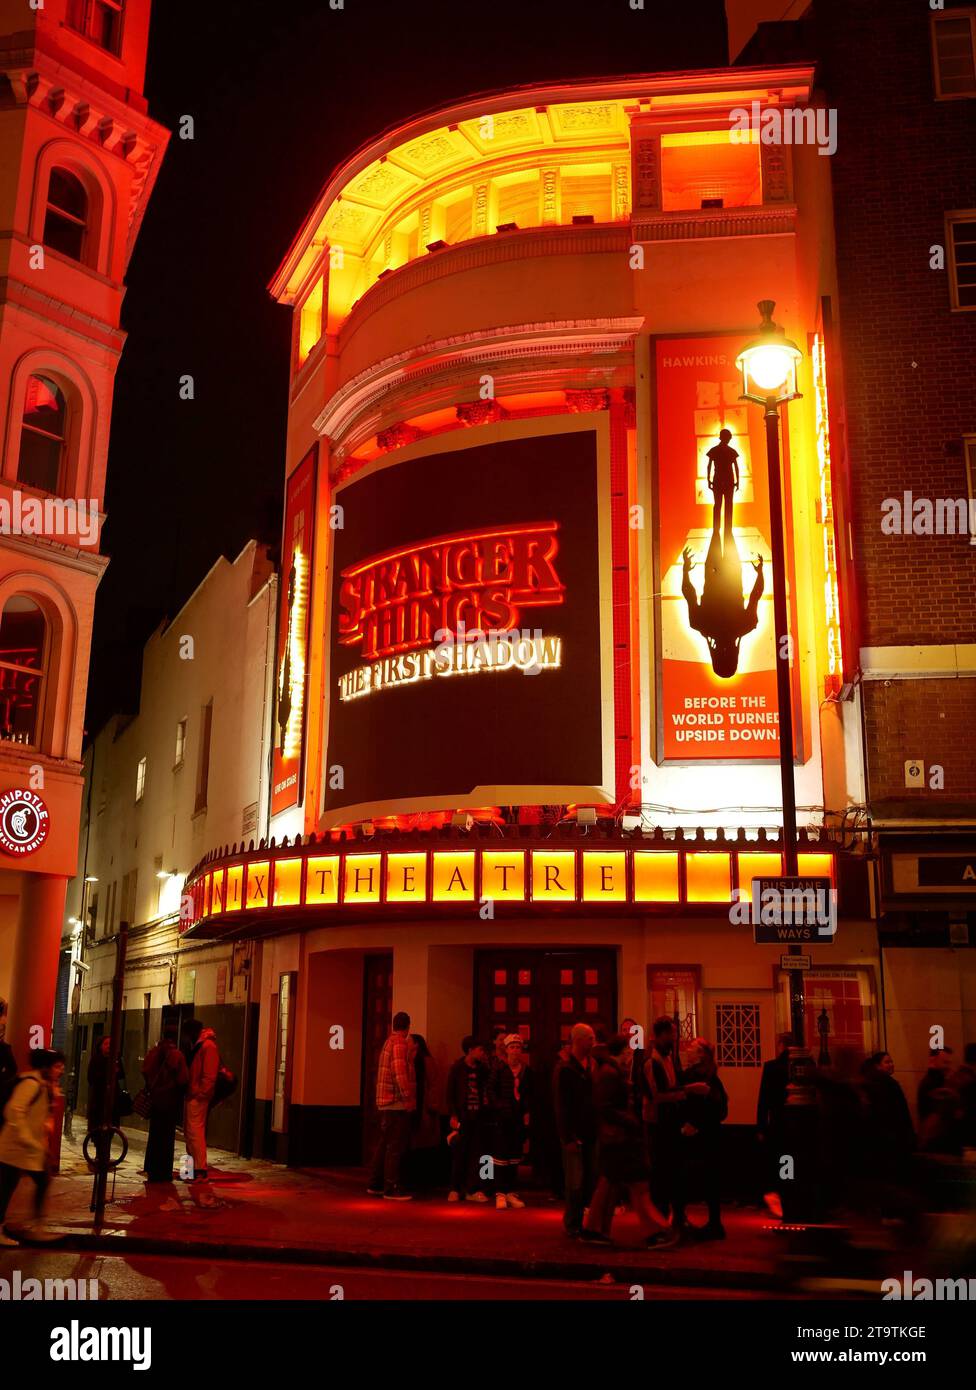 Stranger Things: The First Shadow, spettacolo al Phoenix Theatre nel West End di Londra. Londra Regno Unito Foto Stock